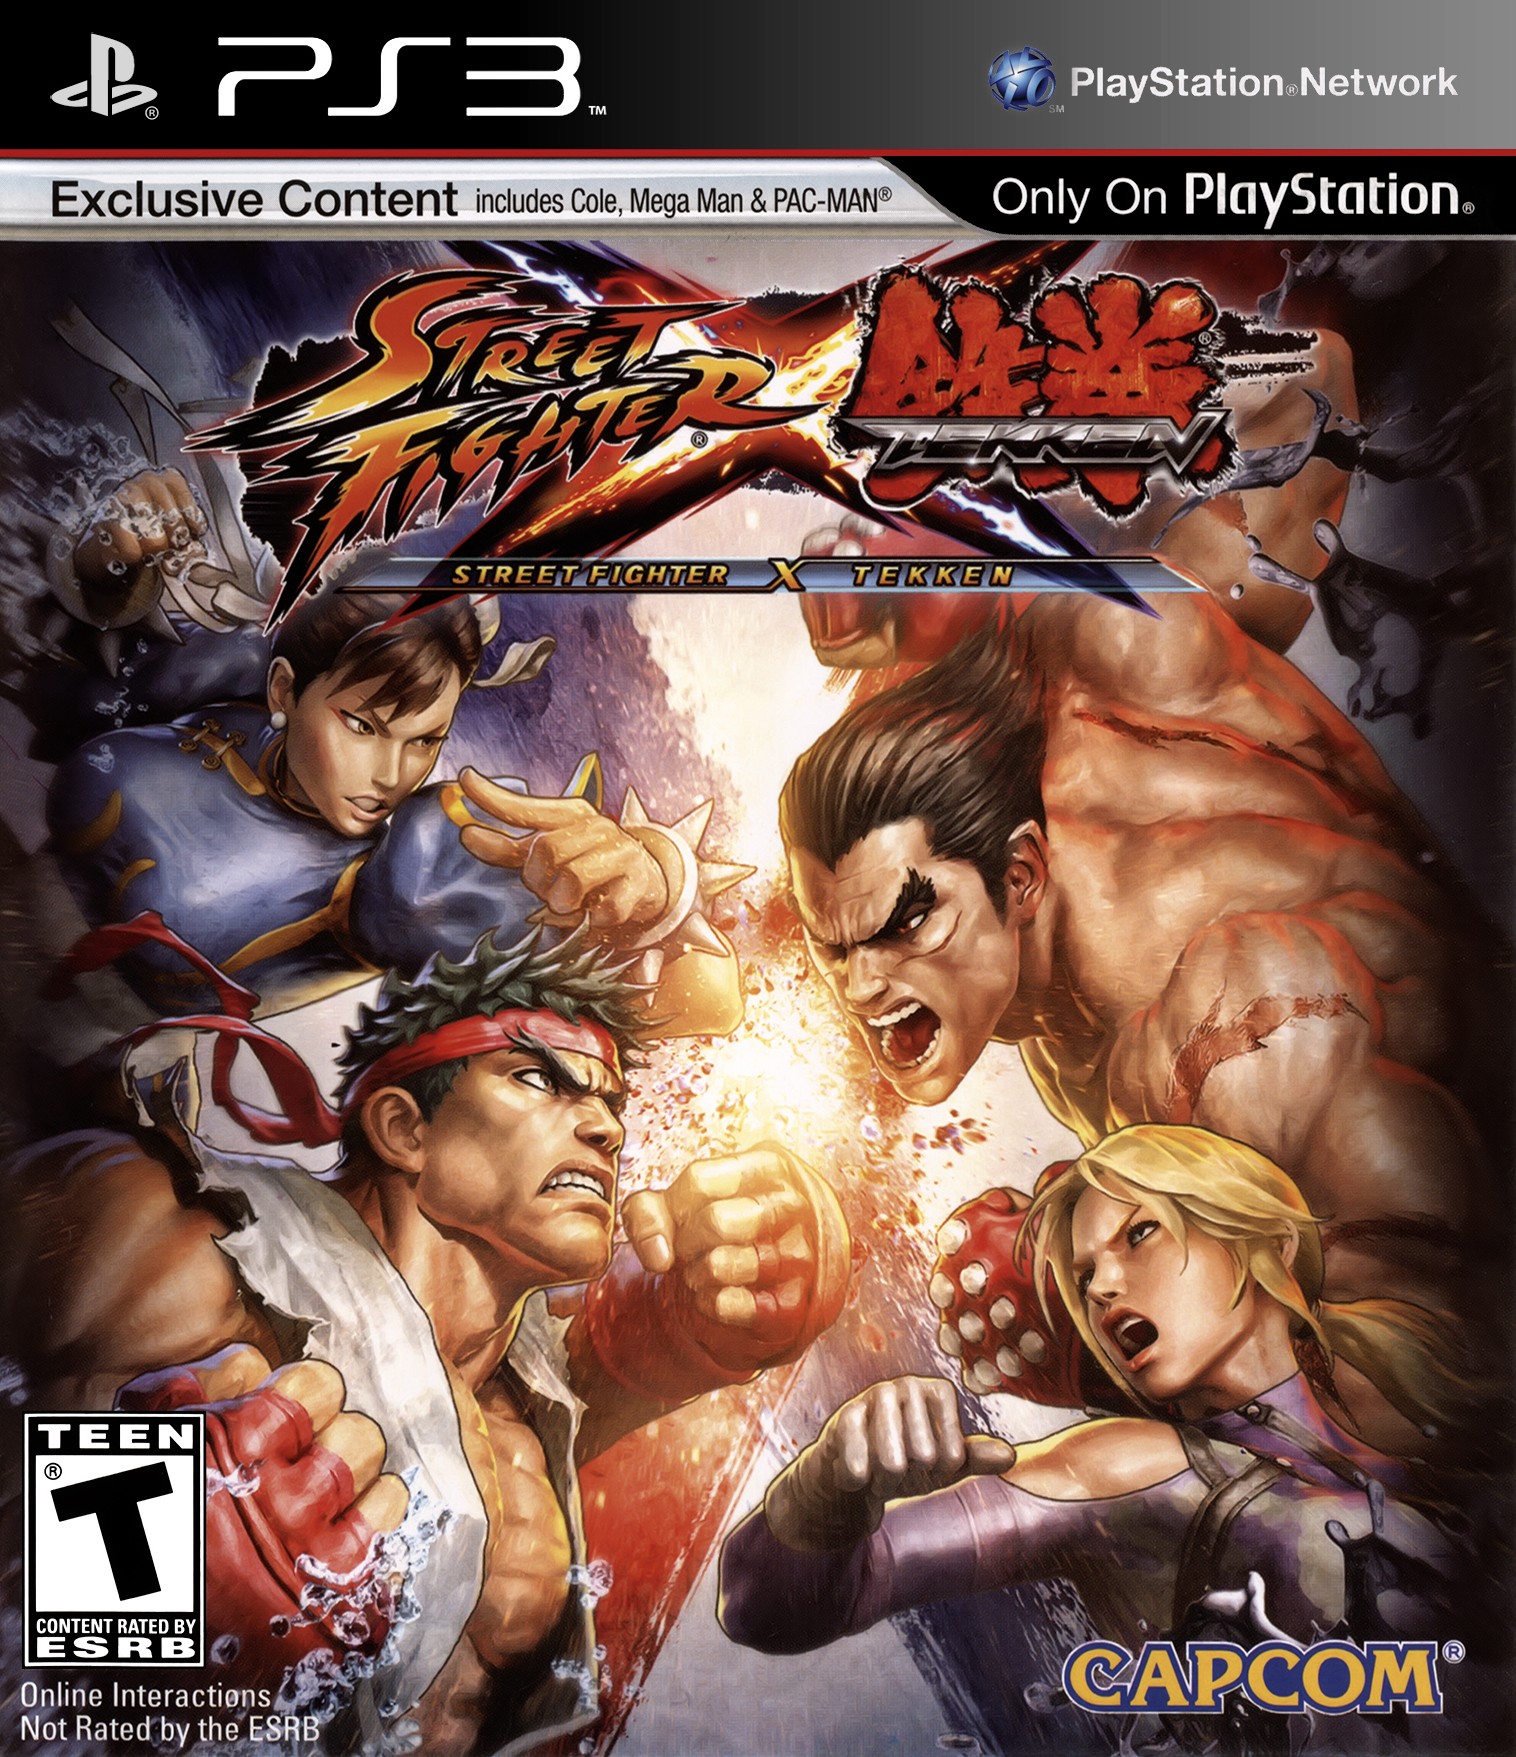 'Street Fighter vs. Tekken'